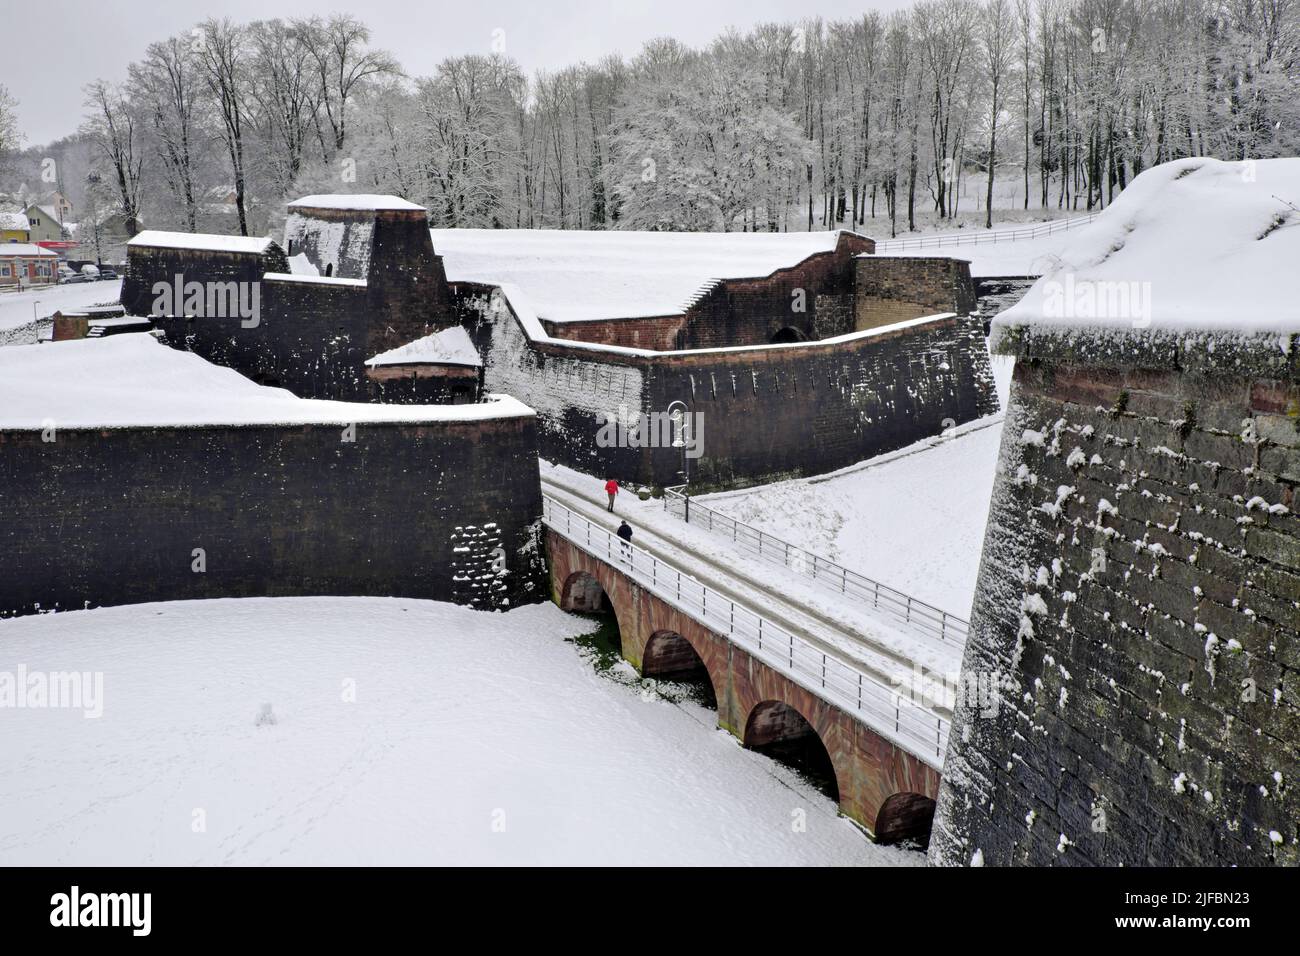 France, Territoire de Belfort, Belfort, citadel, Demi Lune of the Porte de Brisach, snow, winter Stock Photo